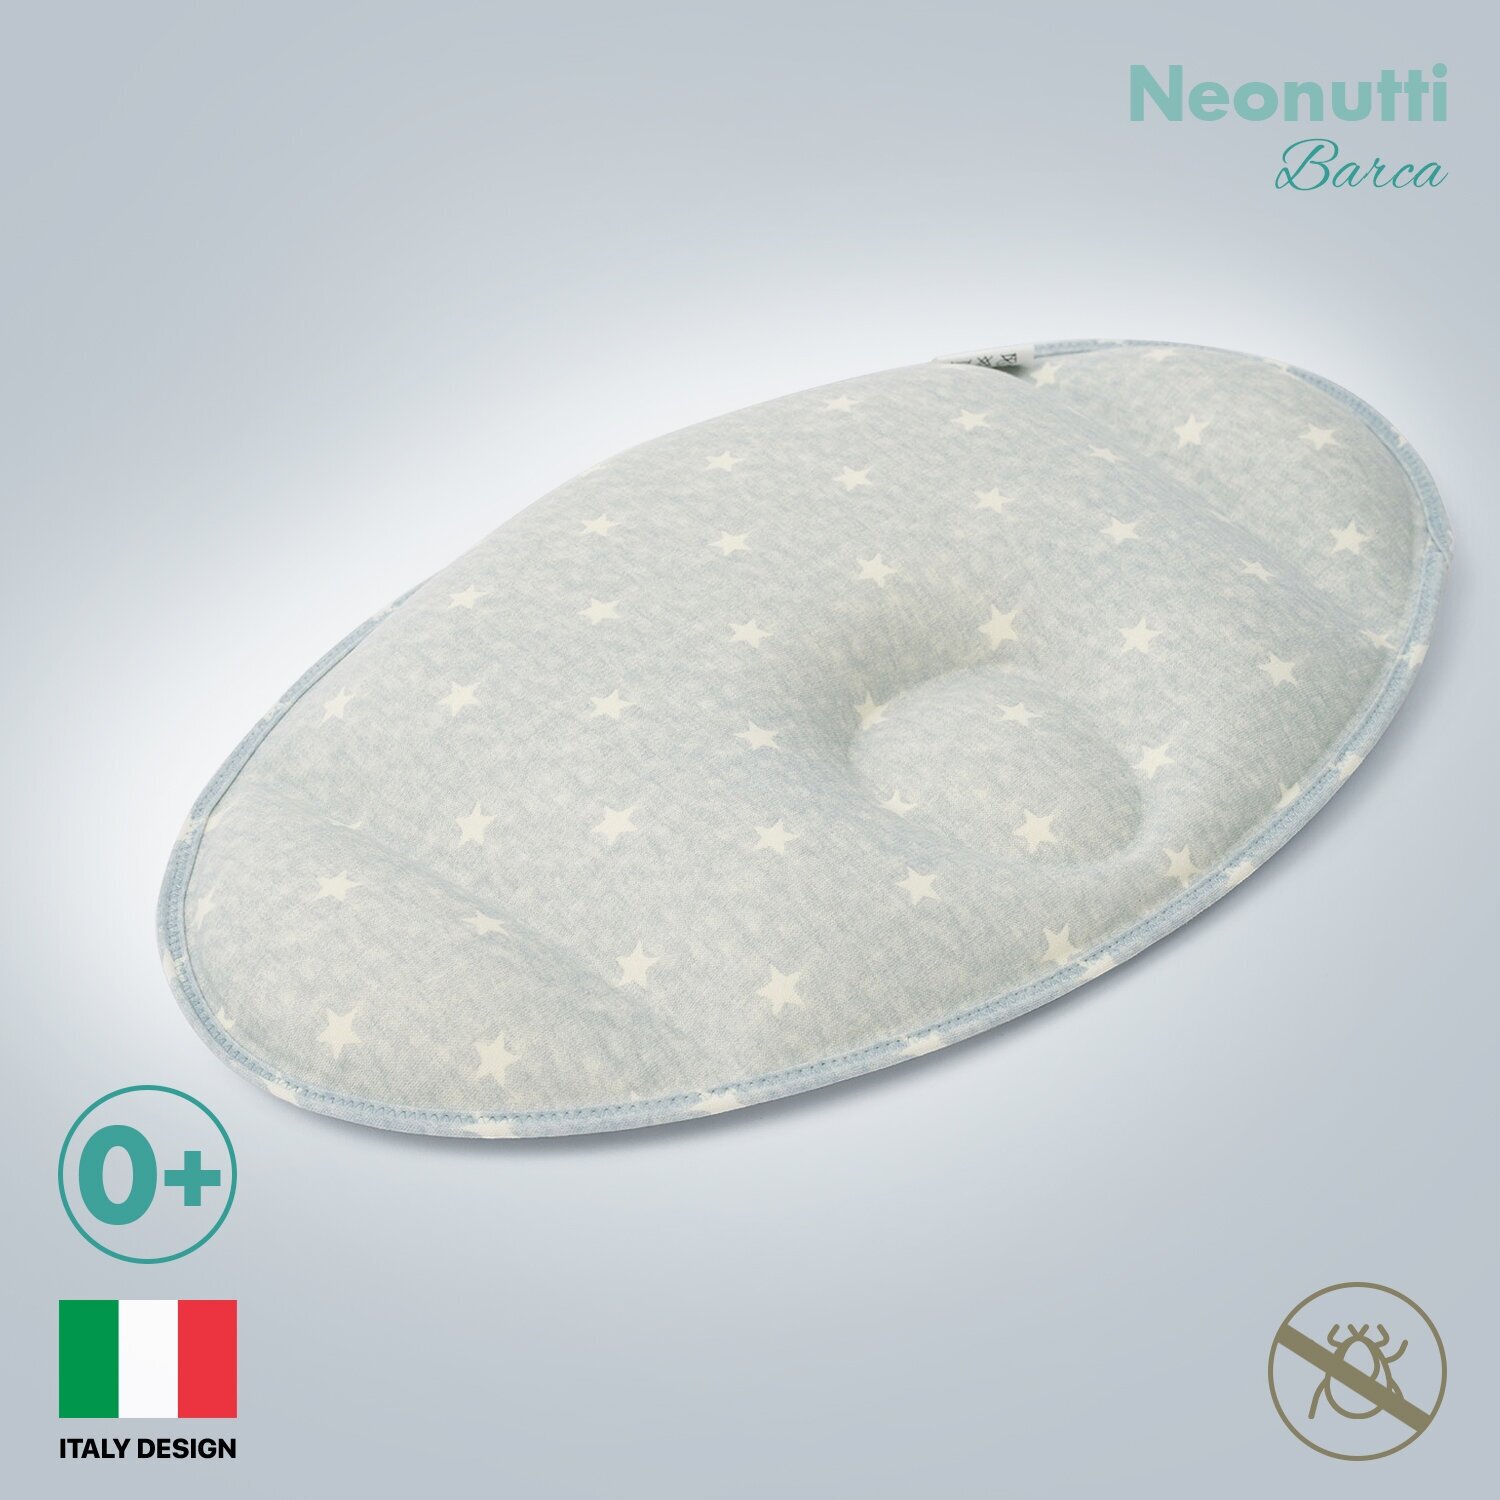 Подушка Nuovita NEONUTTI "Barca Dipinto", для новорожденного (цвета в ассорт.) Сонный гномик - фото №2